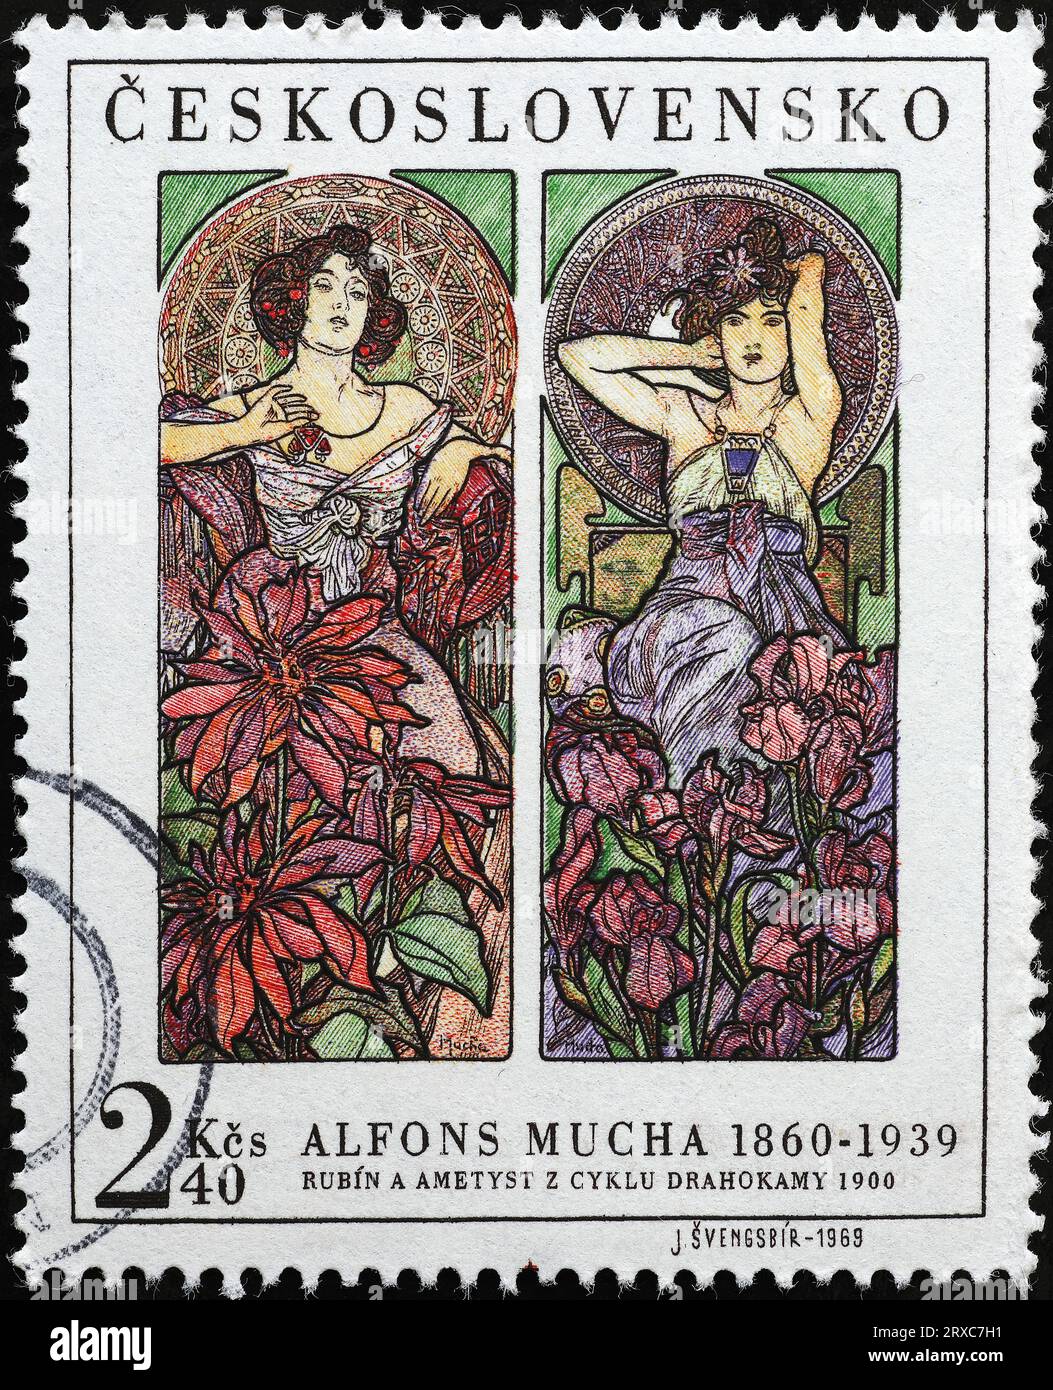 Deux femmes peintes par Alfons Mucha sur timbre tchèque Banque D'Images